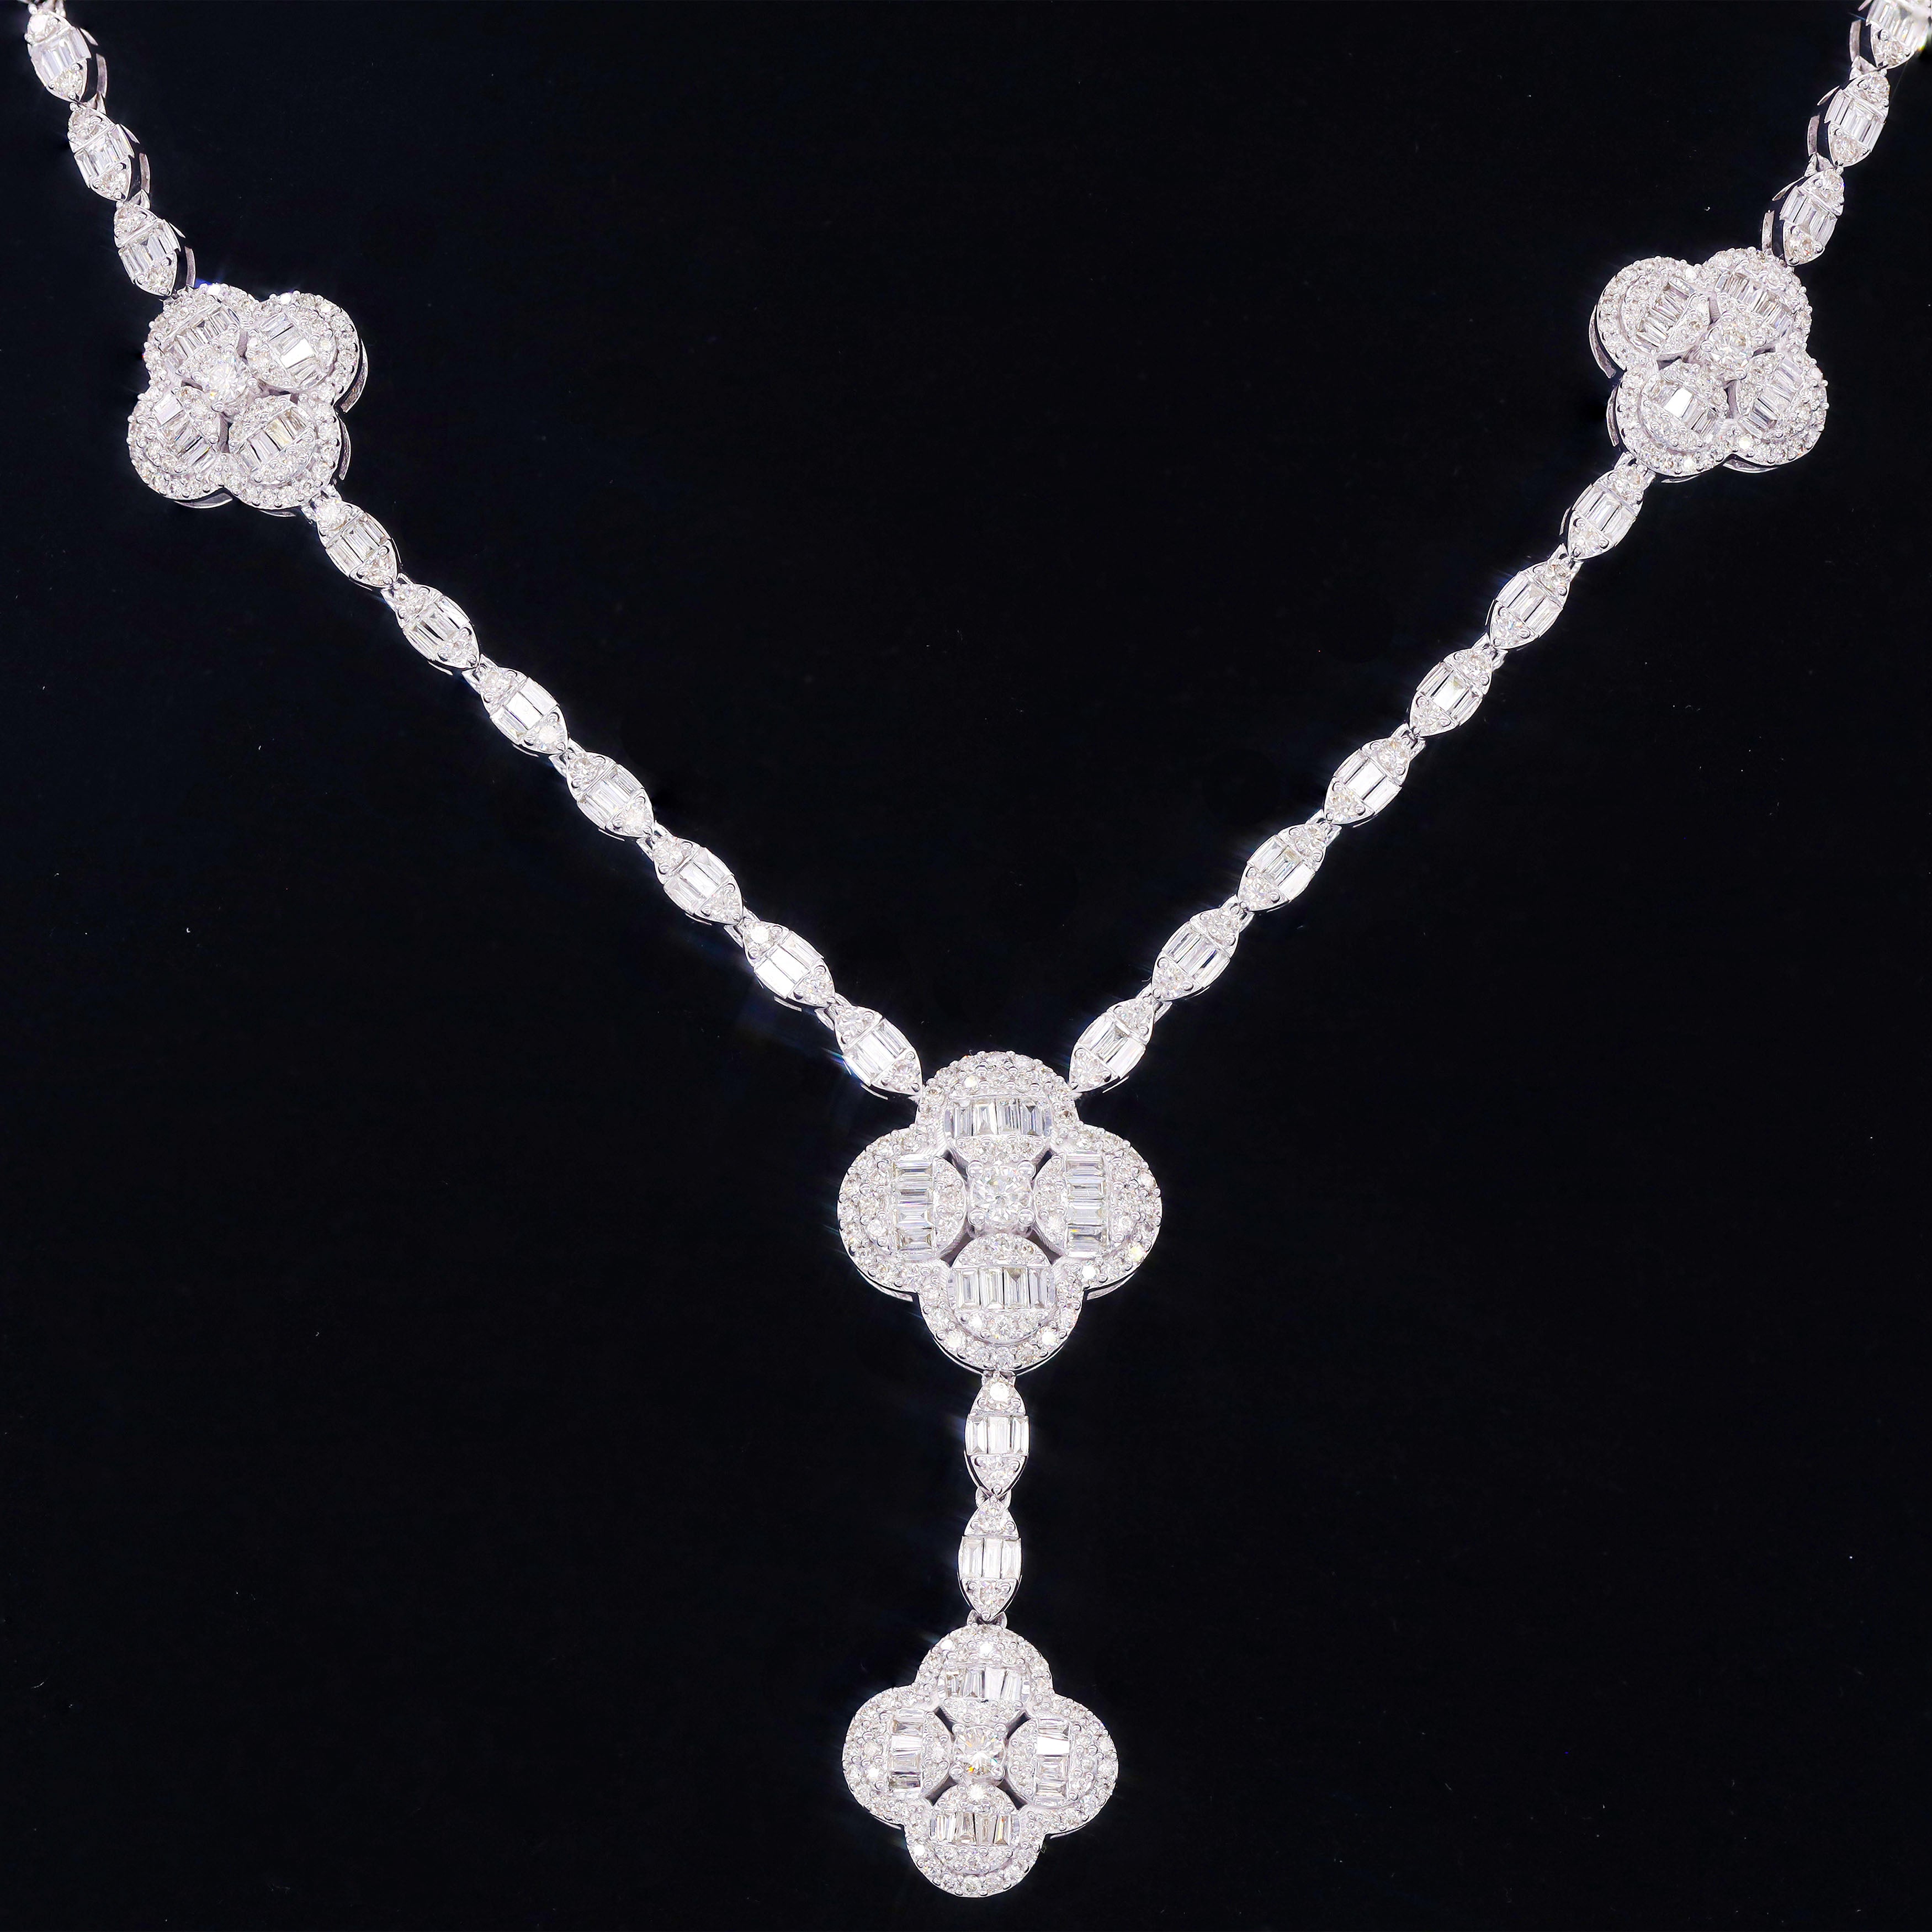 Chandelier Diamond Necklace w/ Clover Diamond Links